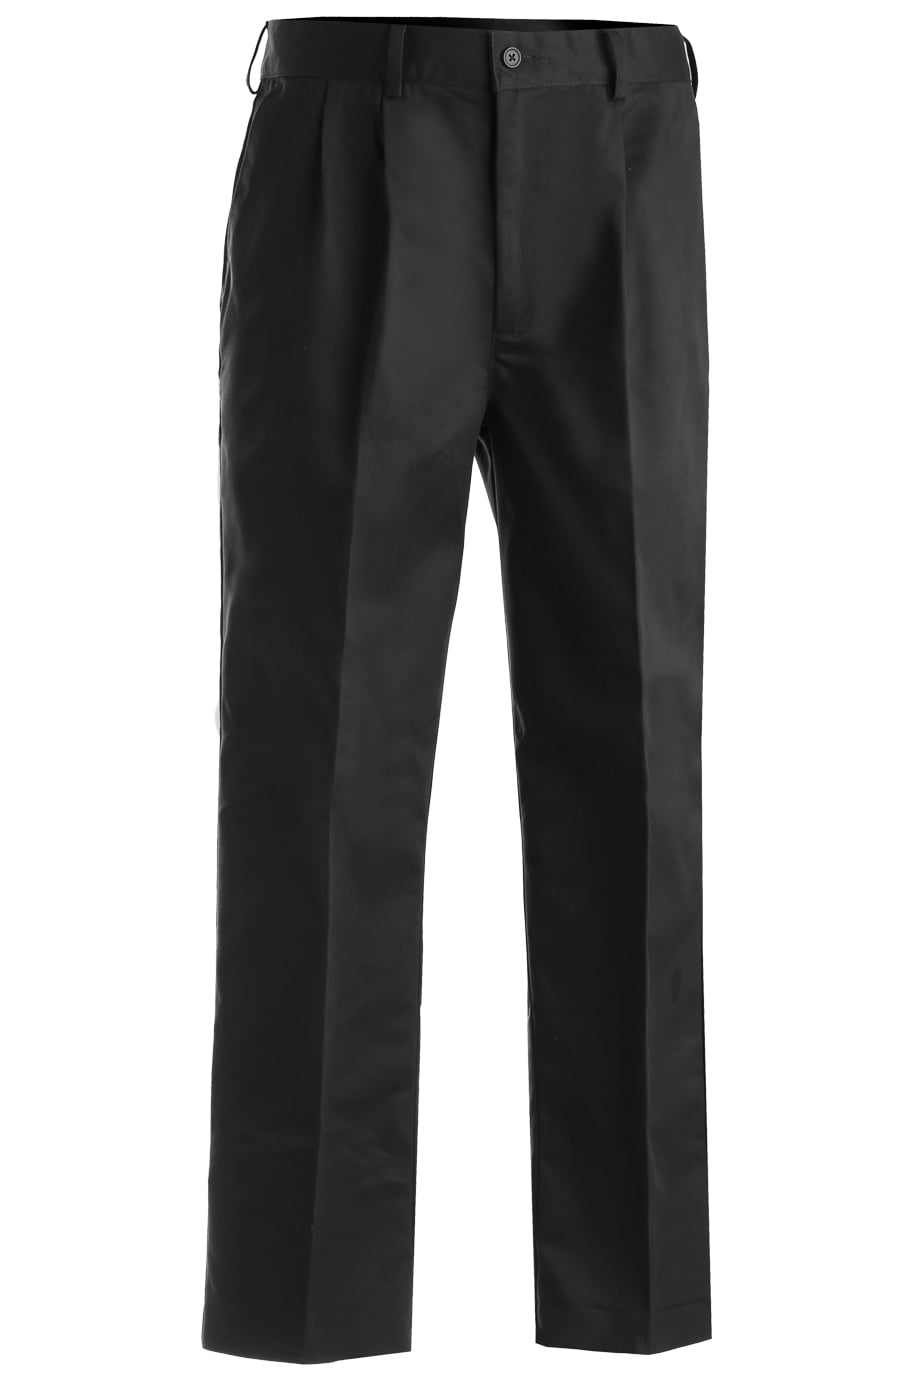 Edwards - Edwards Garment Men's Workwear Pleated Chino Pant, Style 2670 ...